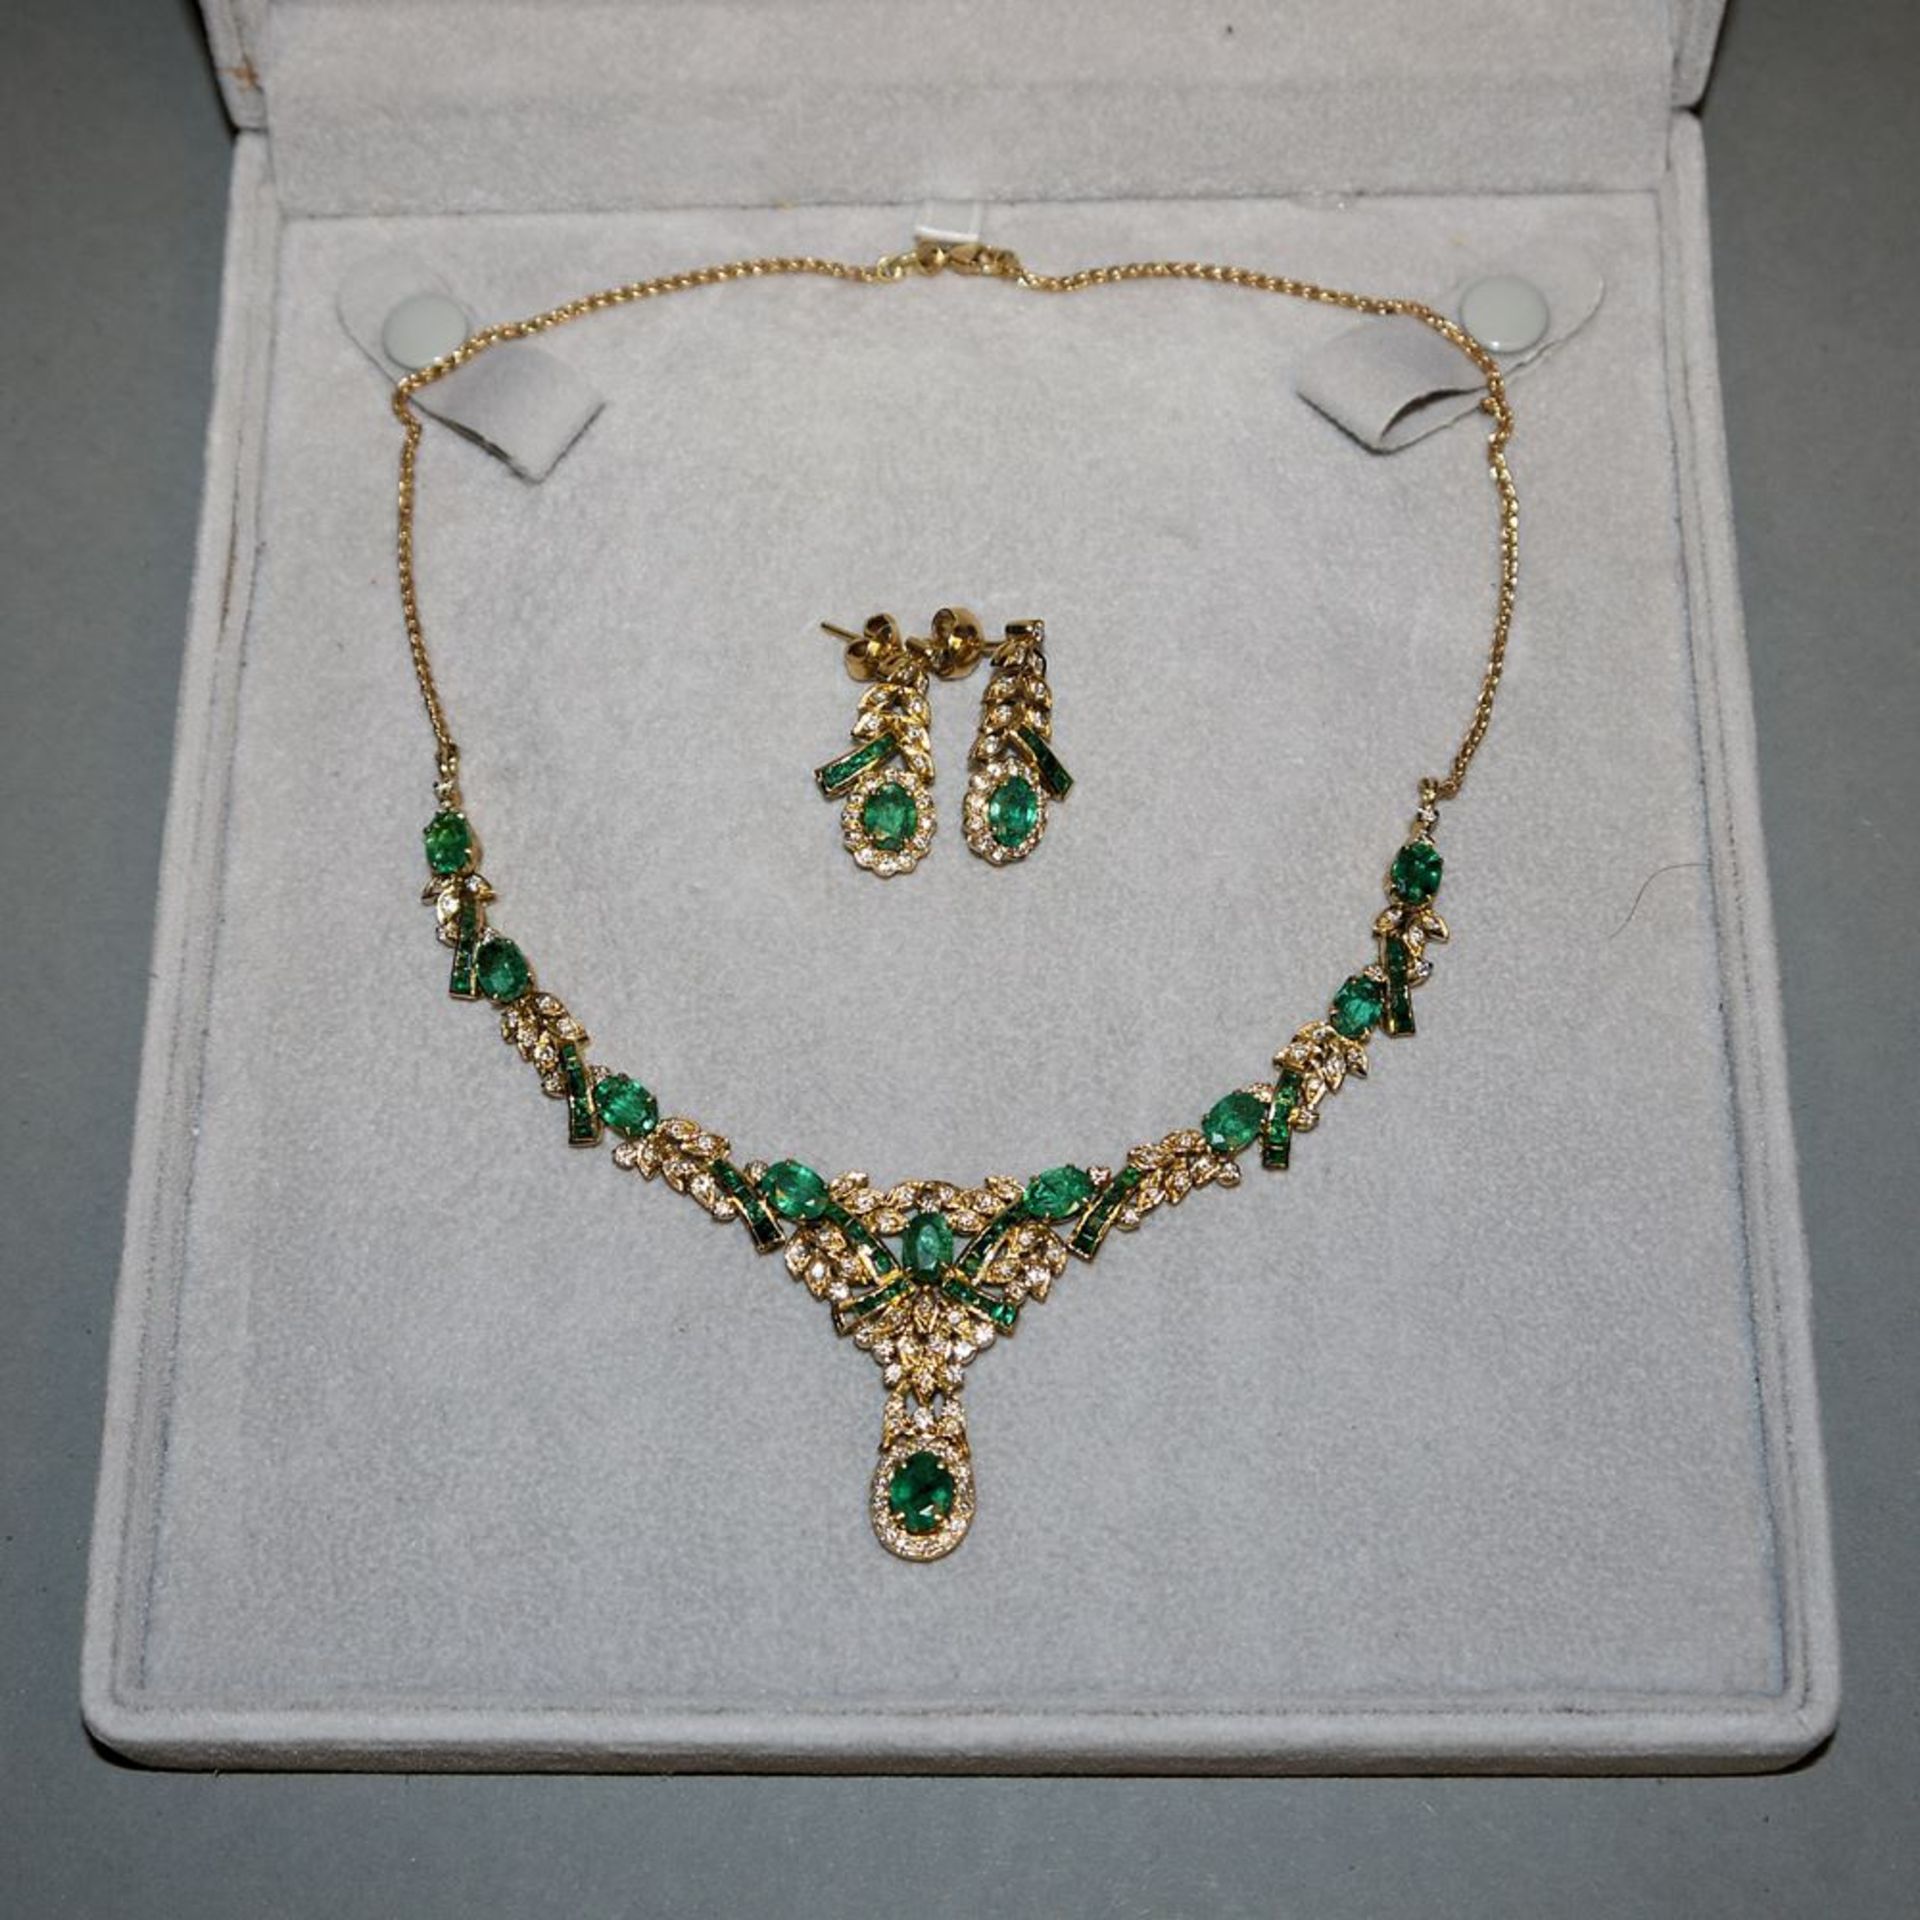 Prächtiges Smaragd-Collier mit Brillanten und dazu passende Ohrhänger, Gold, Friedrich Binder, Möns